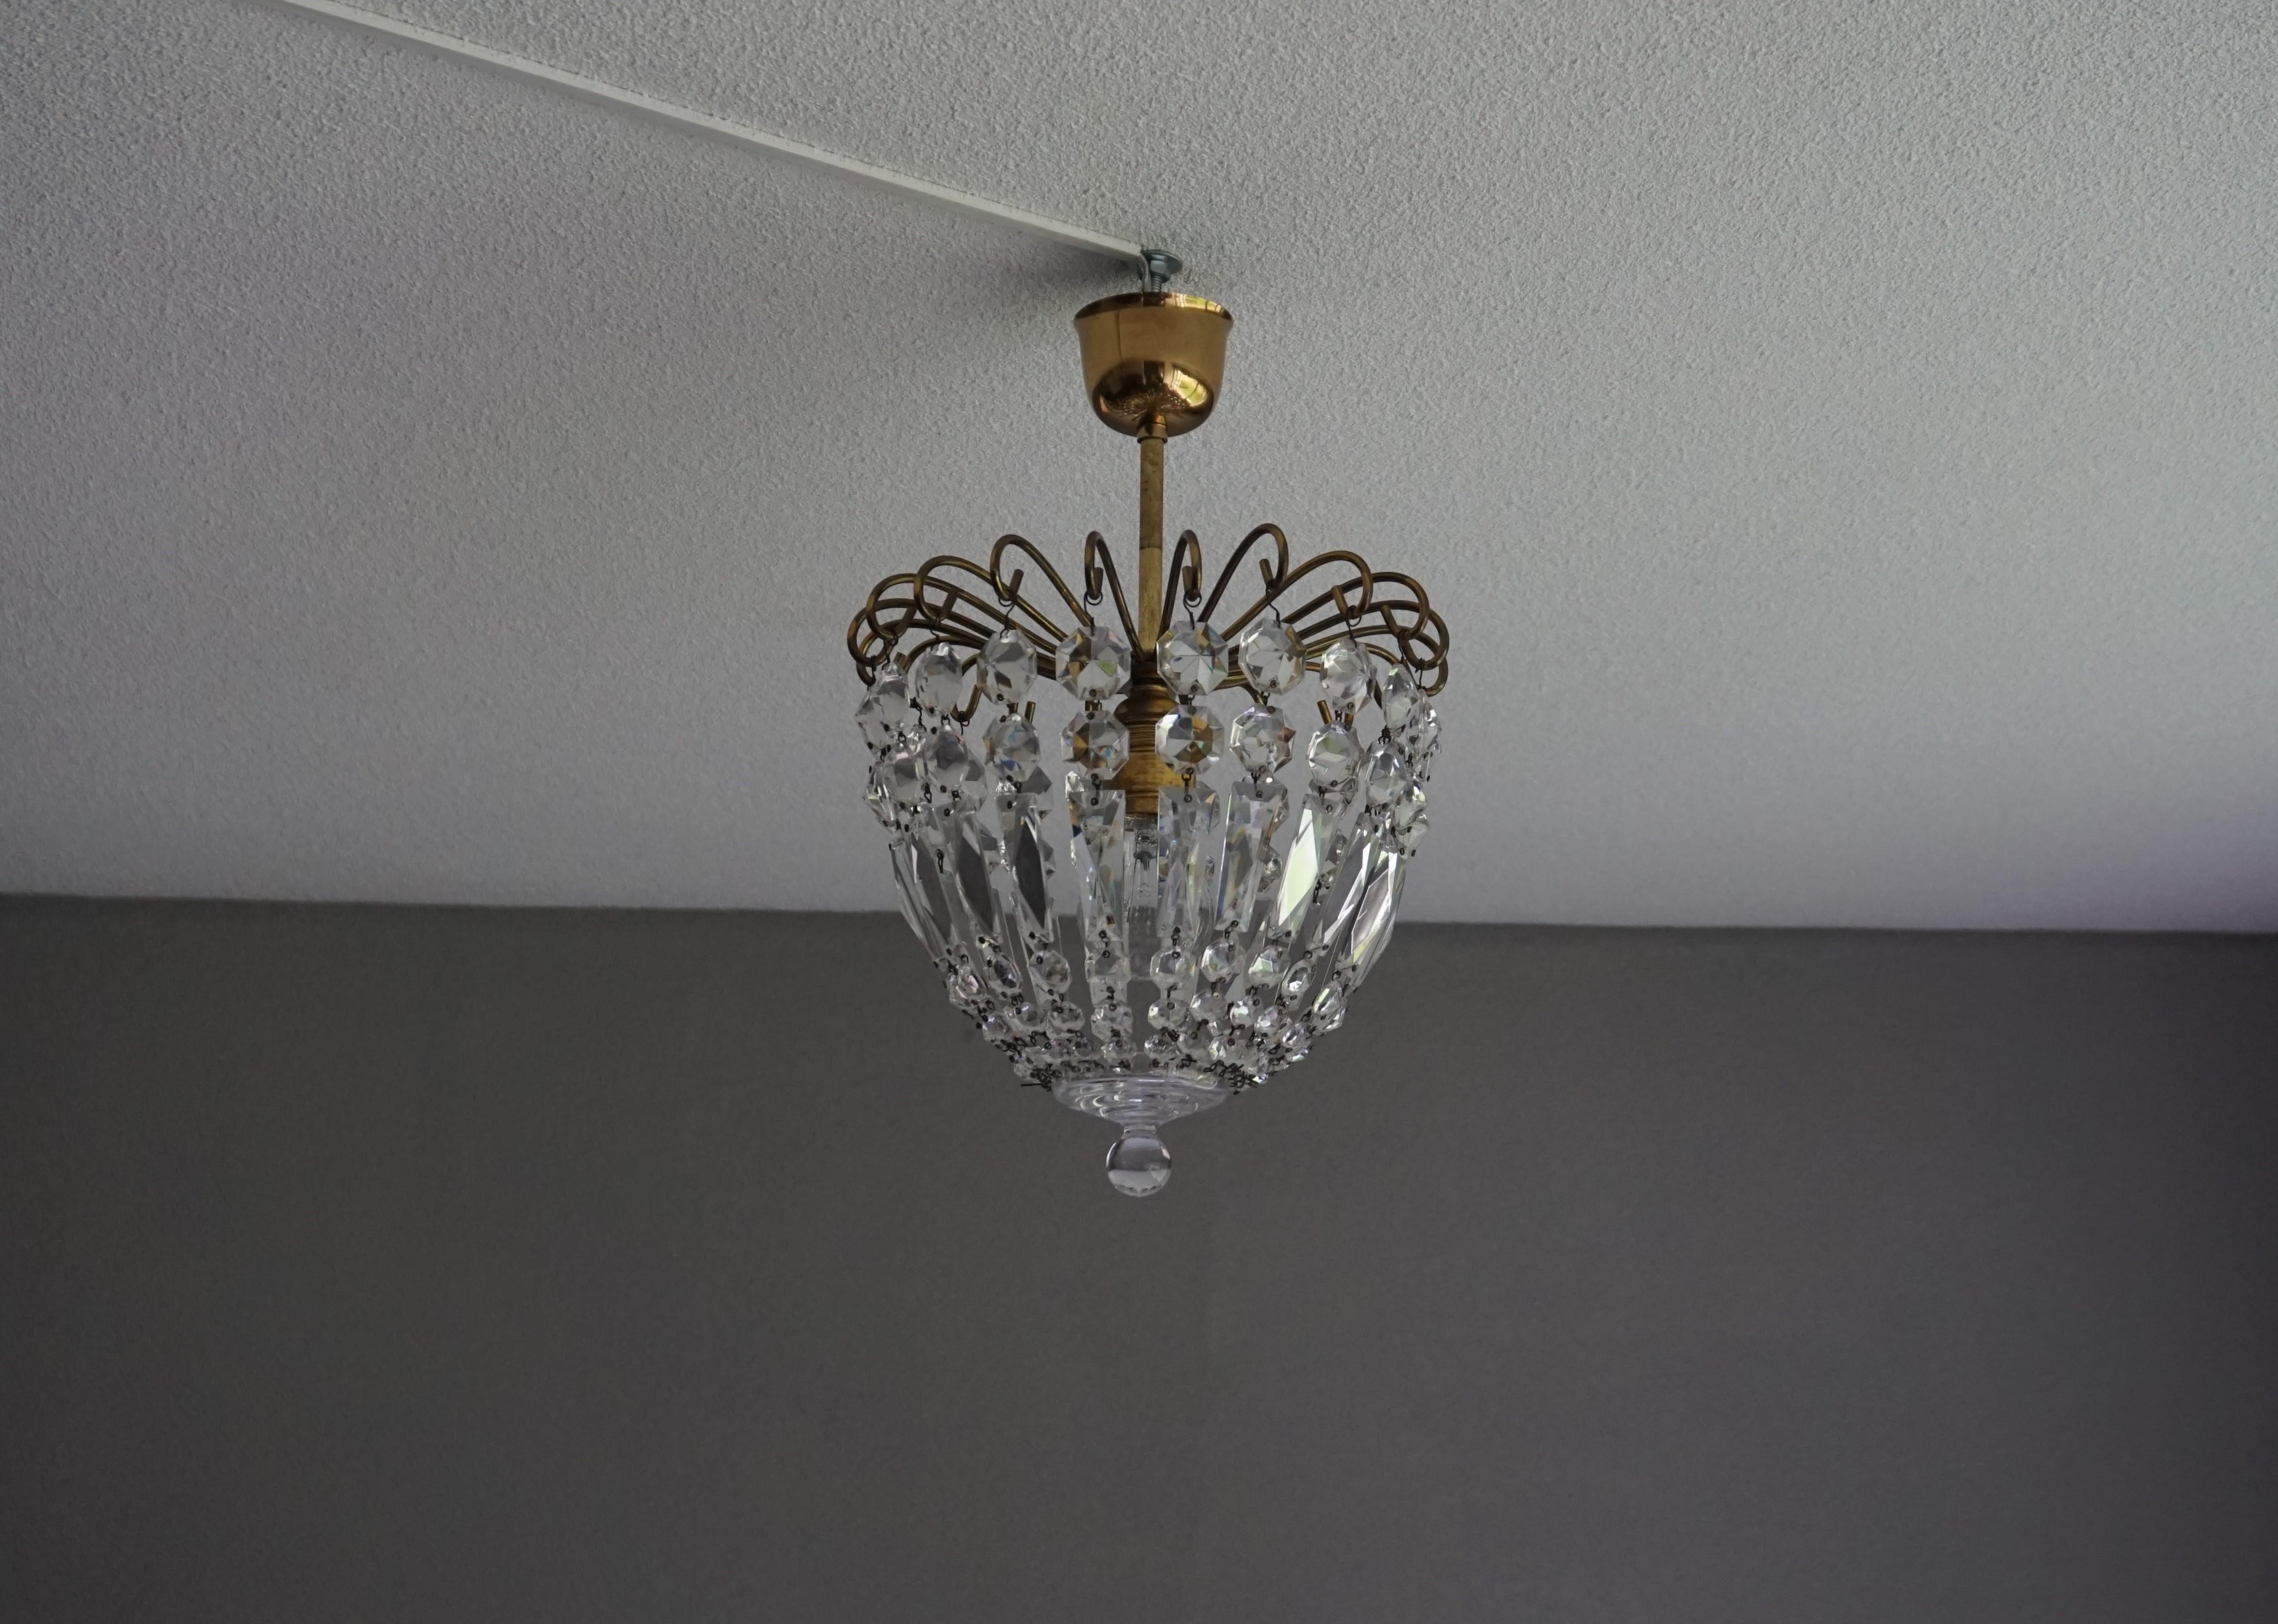 Italian Stylish Little Mid Century Brass and Crystal Glass Murano Pendant Light Fixture